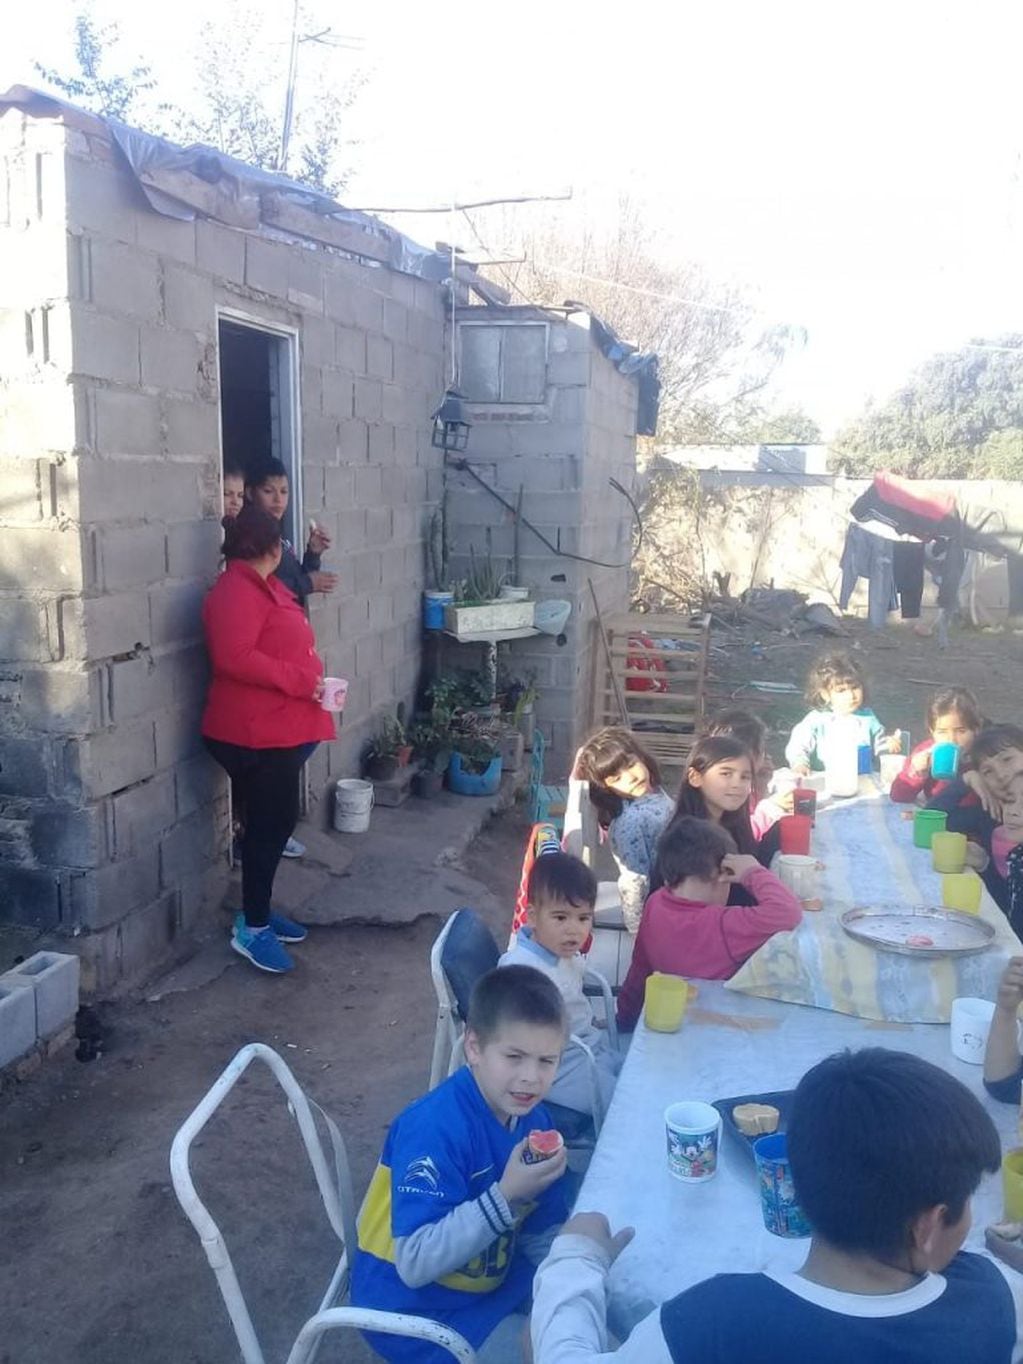 Merendero Pancitas Llenas de Parque Virrey asiste a 60 chicos.